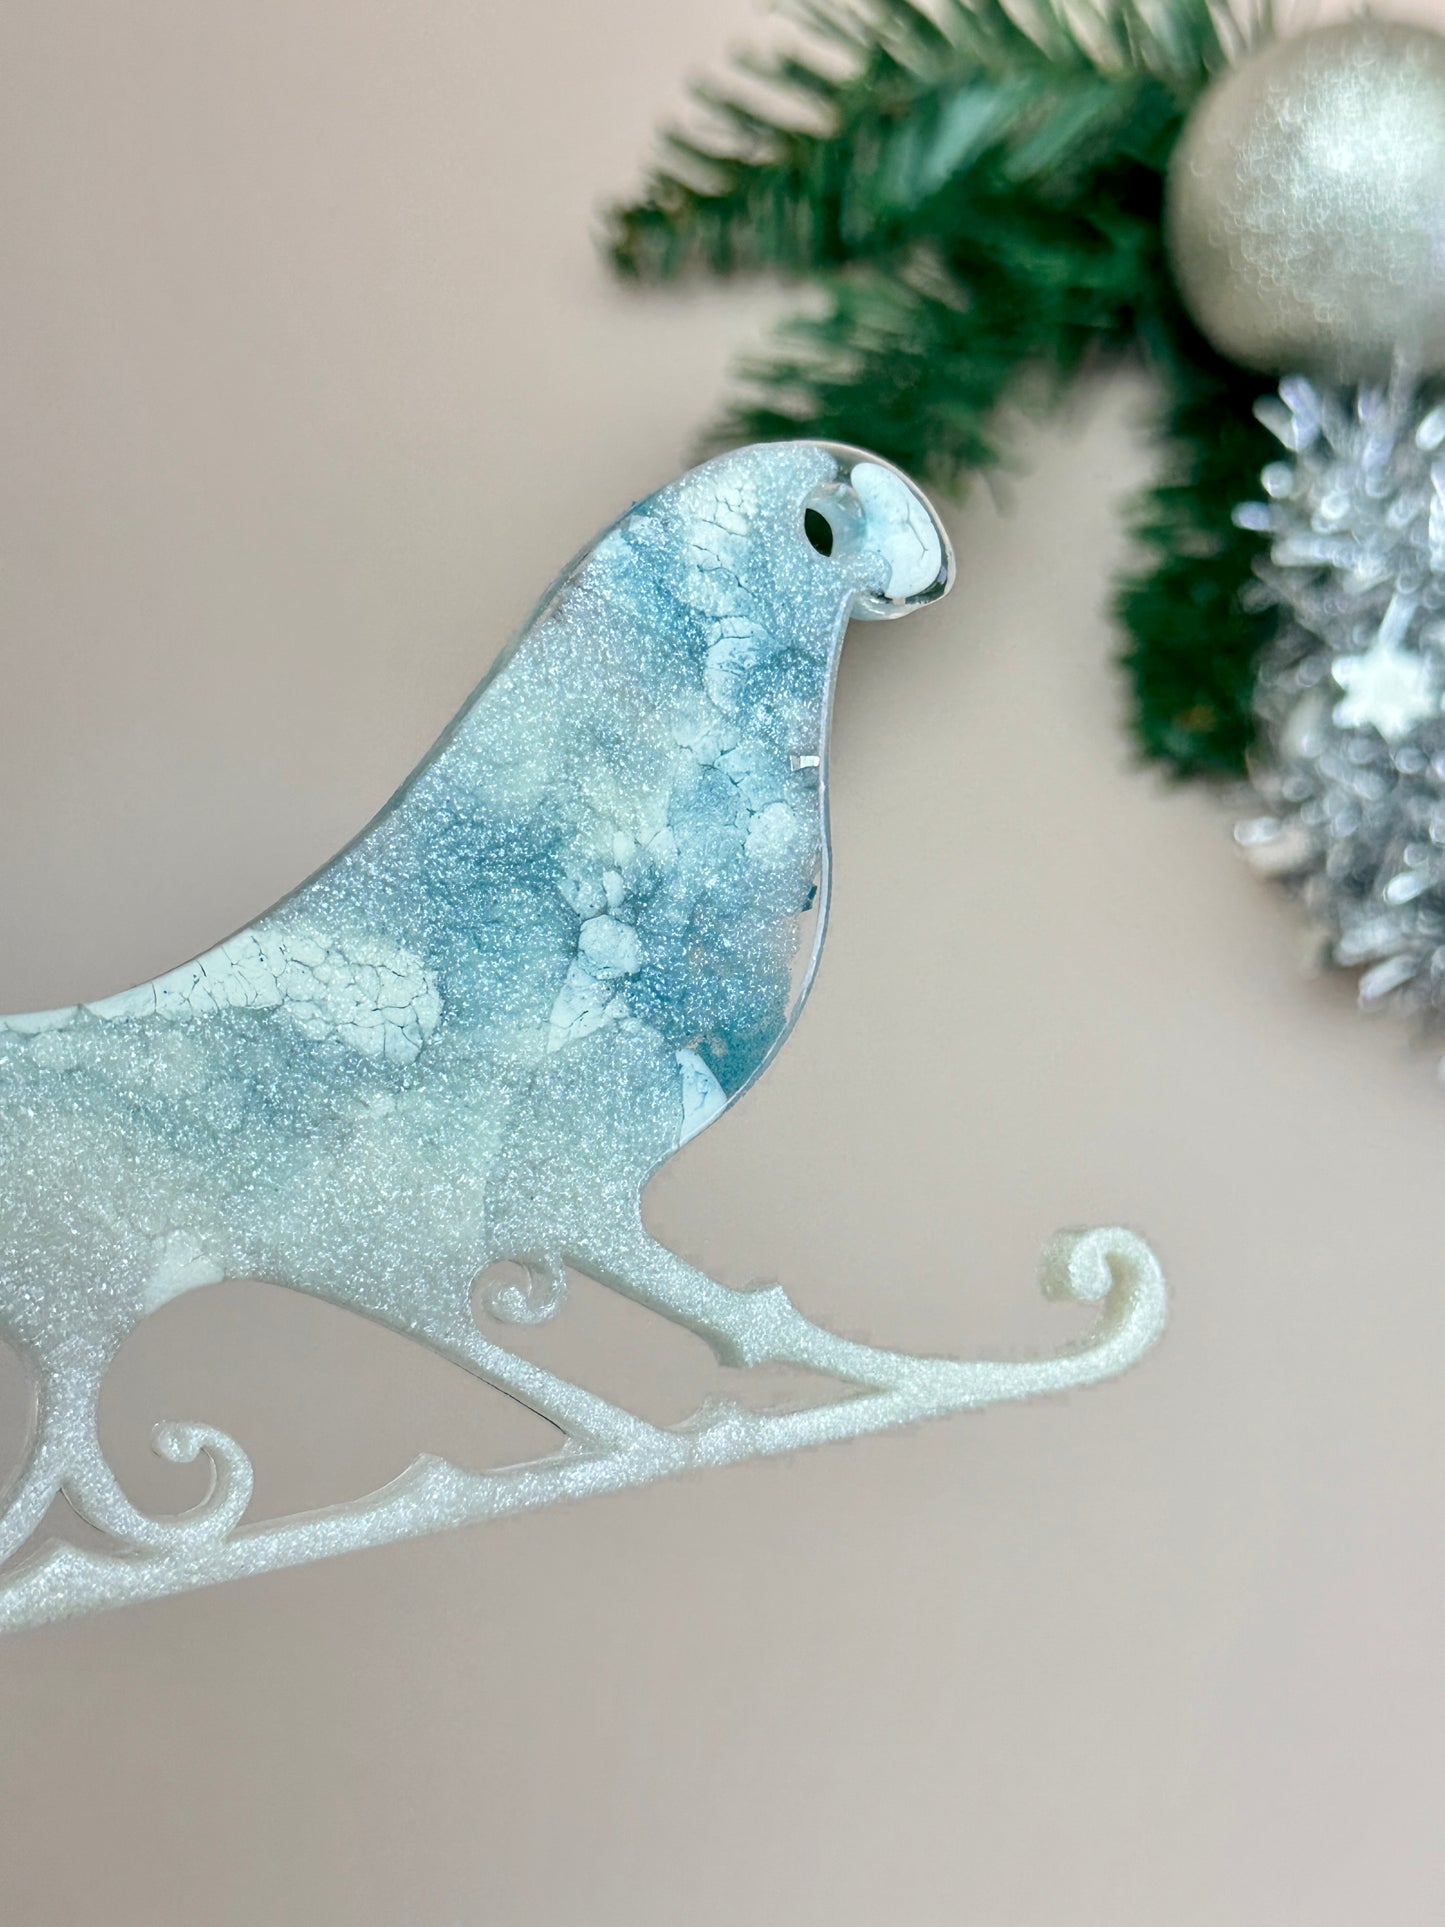 Weihnachts-Schlittenbaum-Spielzeug: Große Silikonform für Kunstharz-Kunsthandwerk, DIY-Dekoration und Geschenke